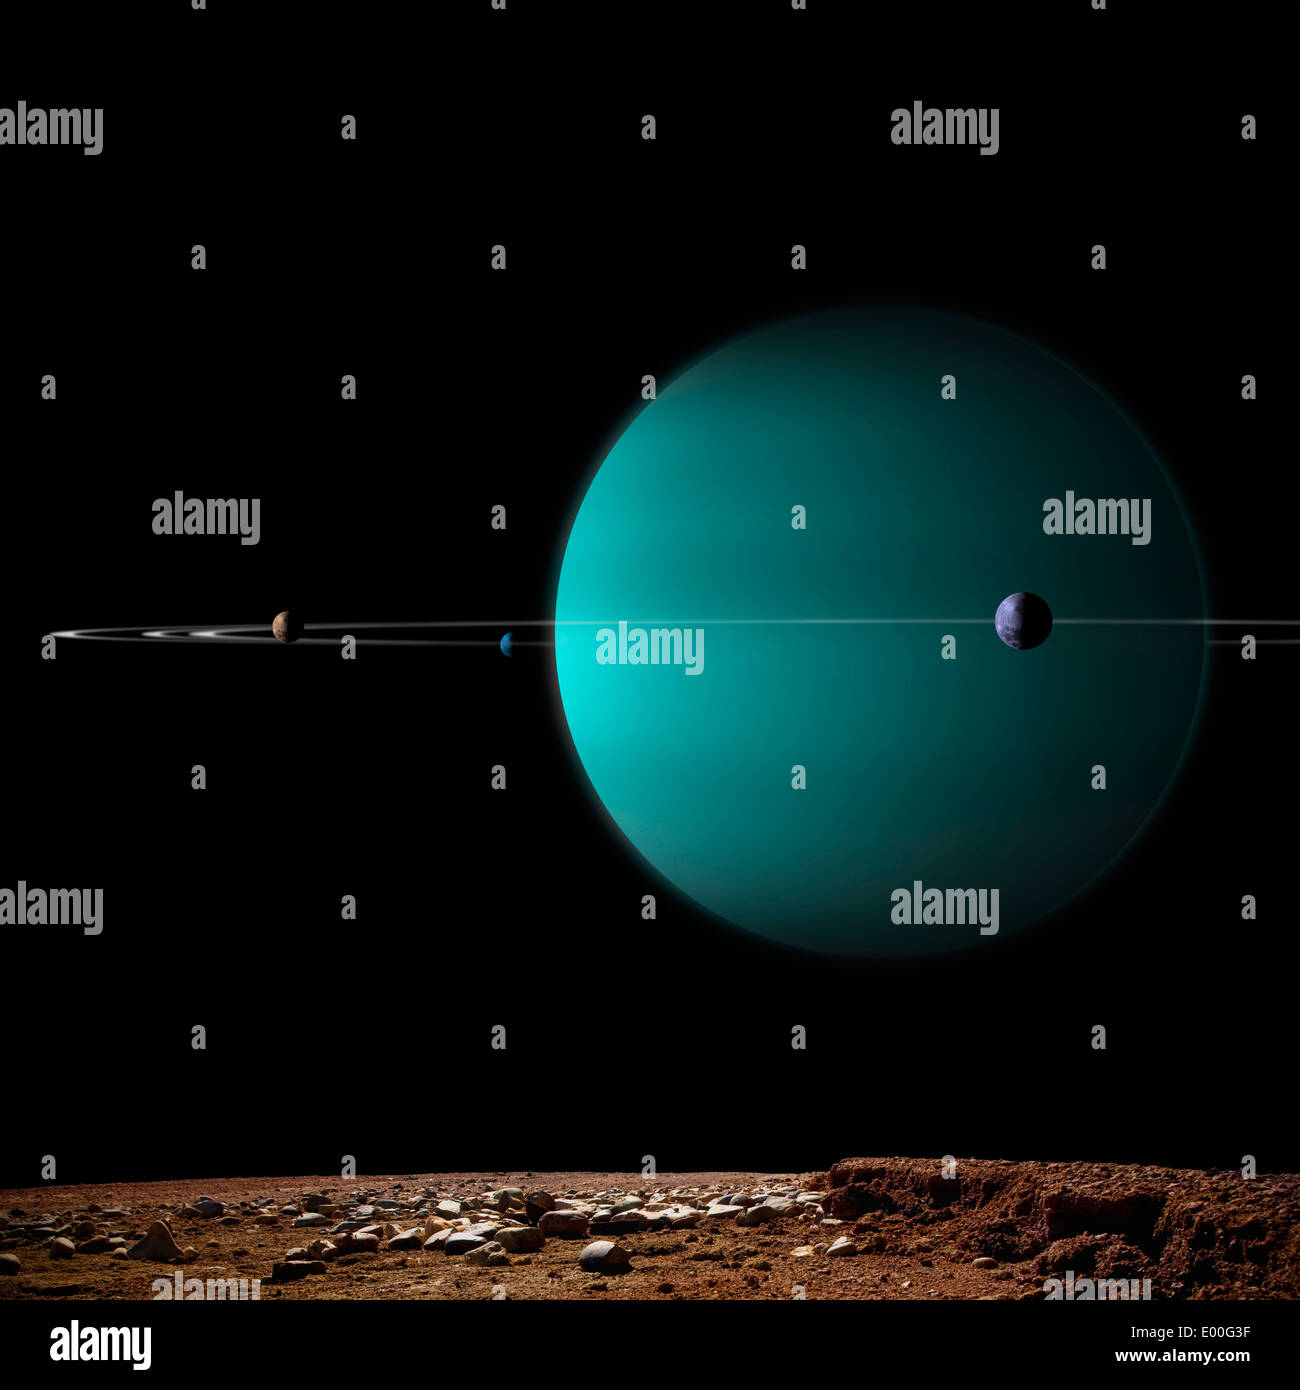 Artista della rappresentazione di un gas inanellato pianeta gigante circondato da è lune. Foto Stock